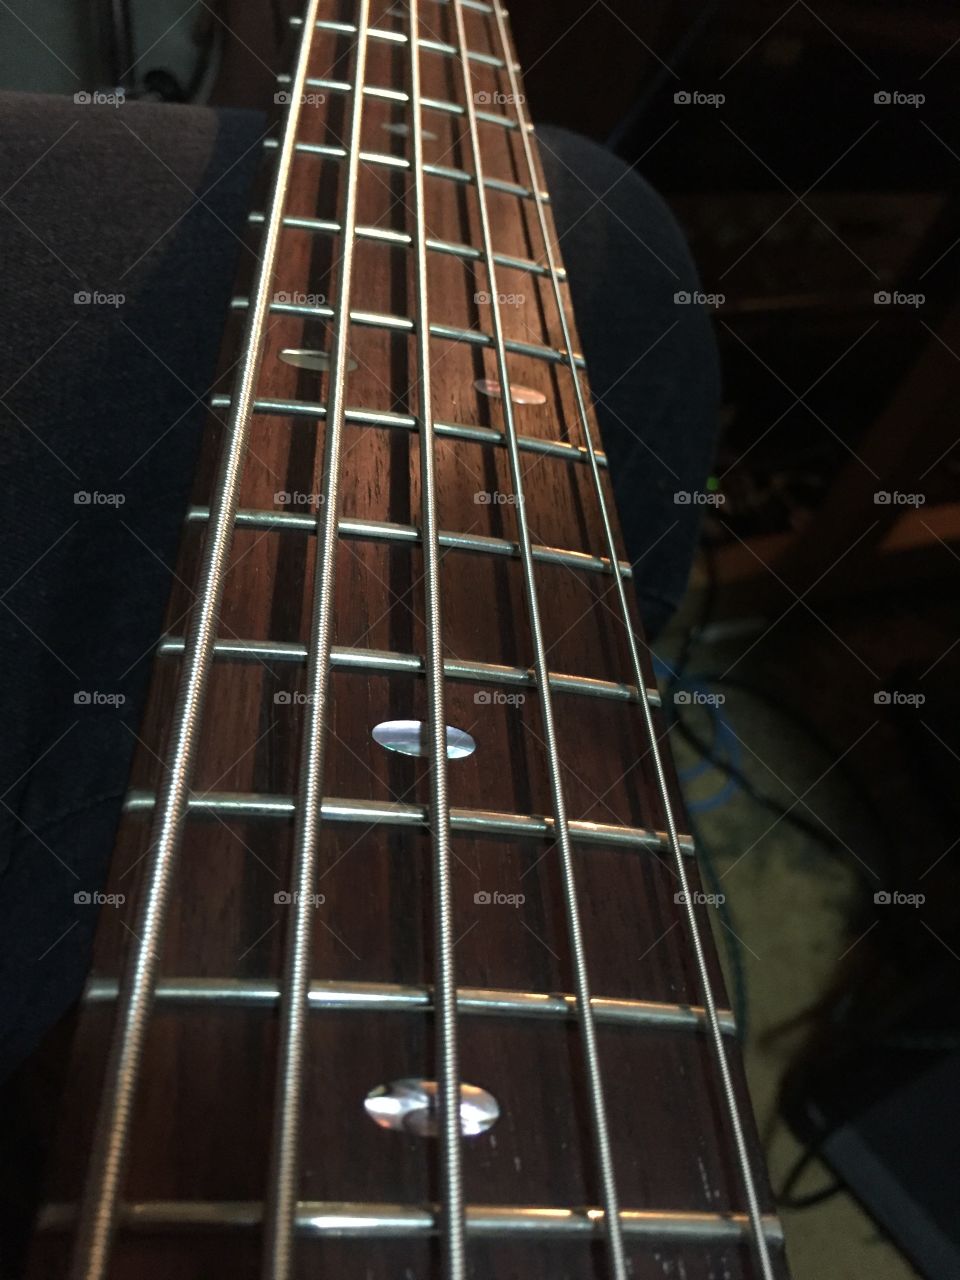 5-string bass guitar neck